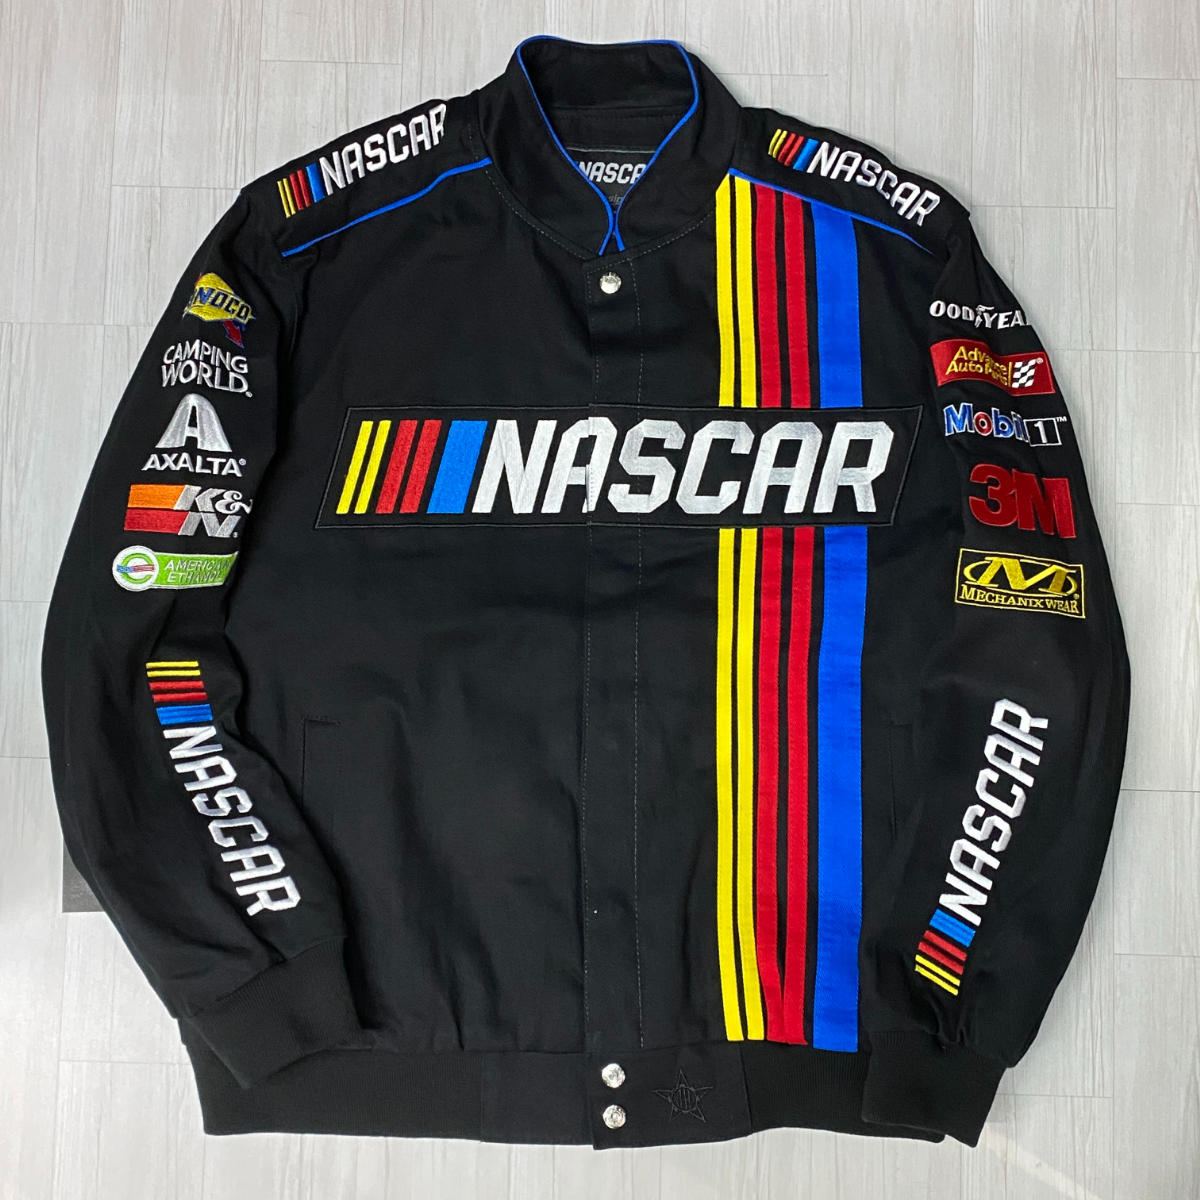 USA最強モータースポーツ 【3XL】 NASCAR ナスカー JHデザイン Twill Uniform レーシングジャケット 黒 USA正規品 フルスナップ仕様